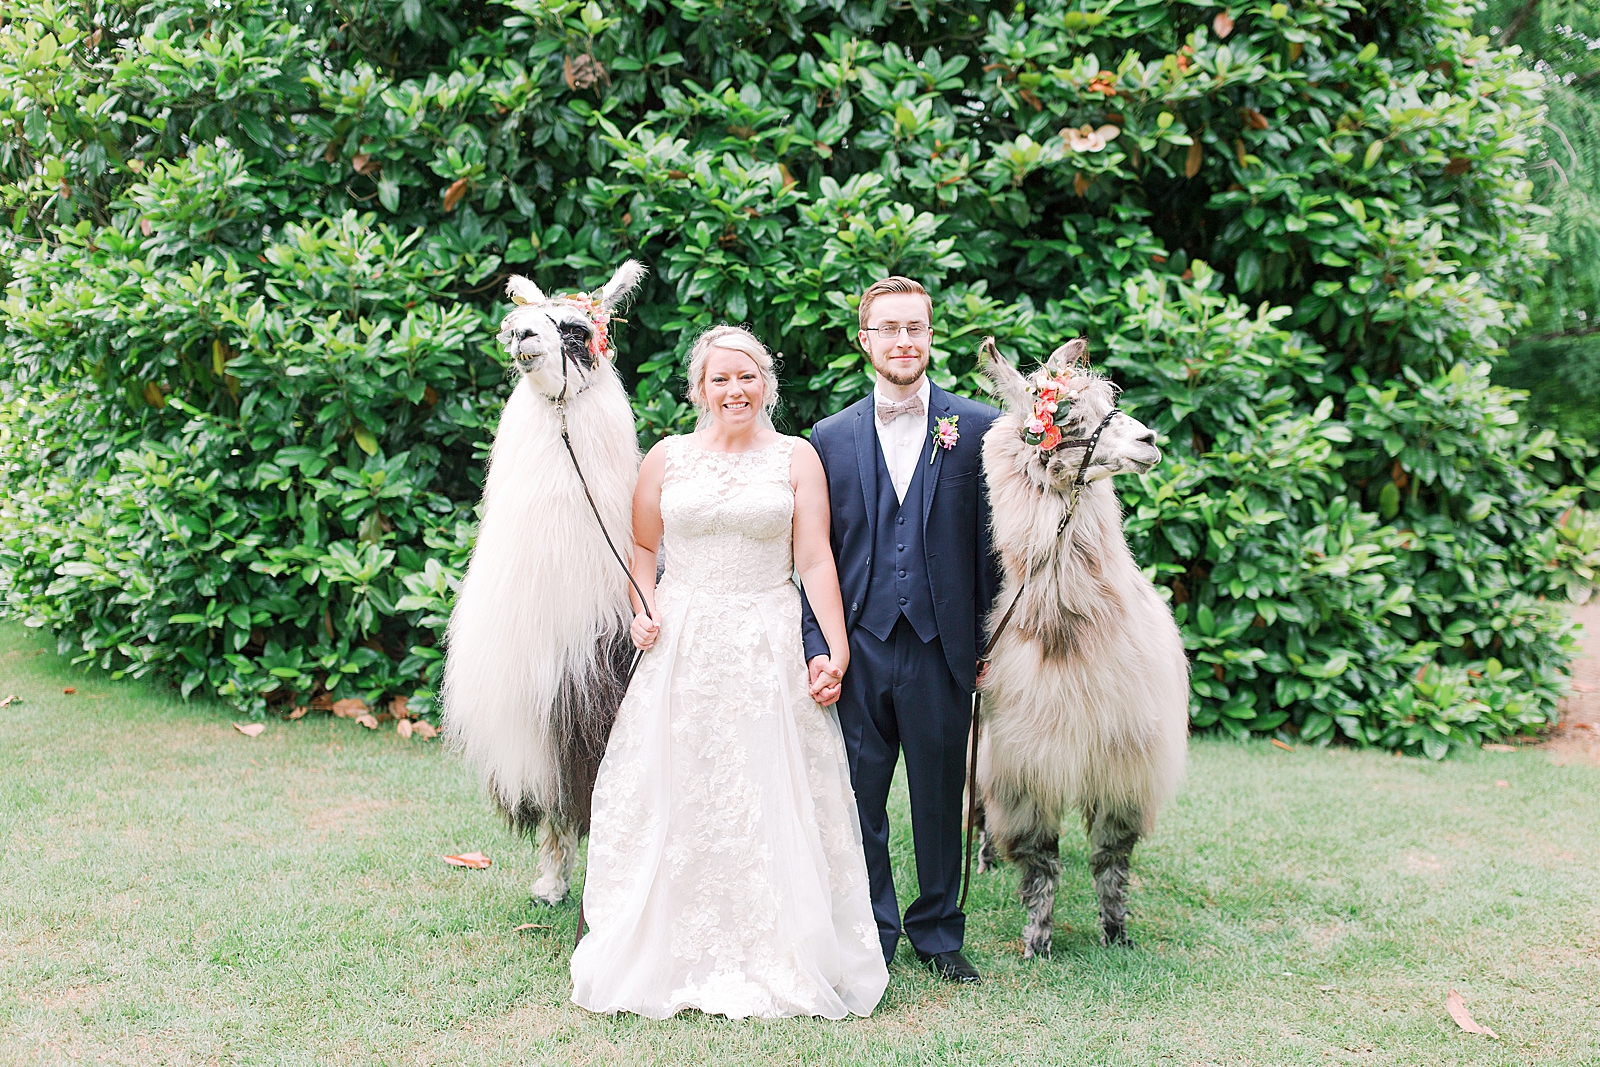 Black Fox Farms Garden Wedding Reception Bride and Groom with Llamas Photo